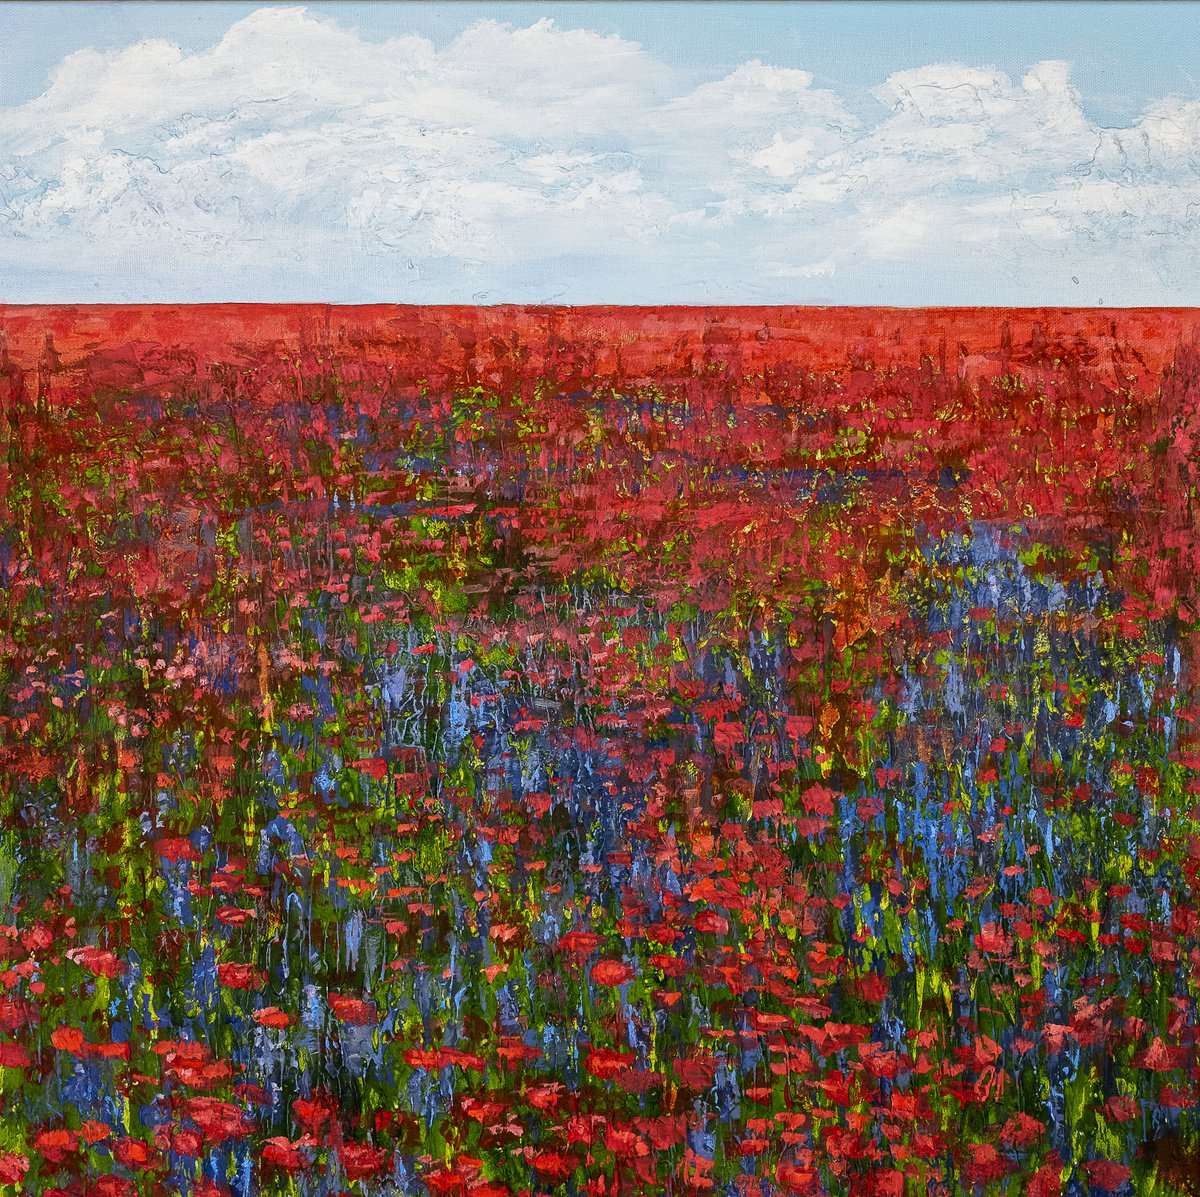 Poppy field with cornflowers. by Daria Shalik